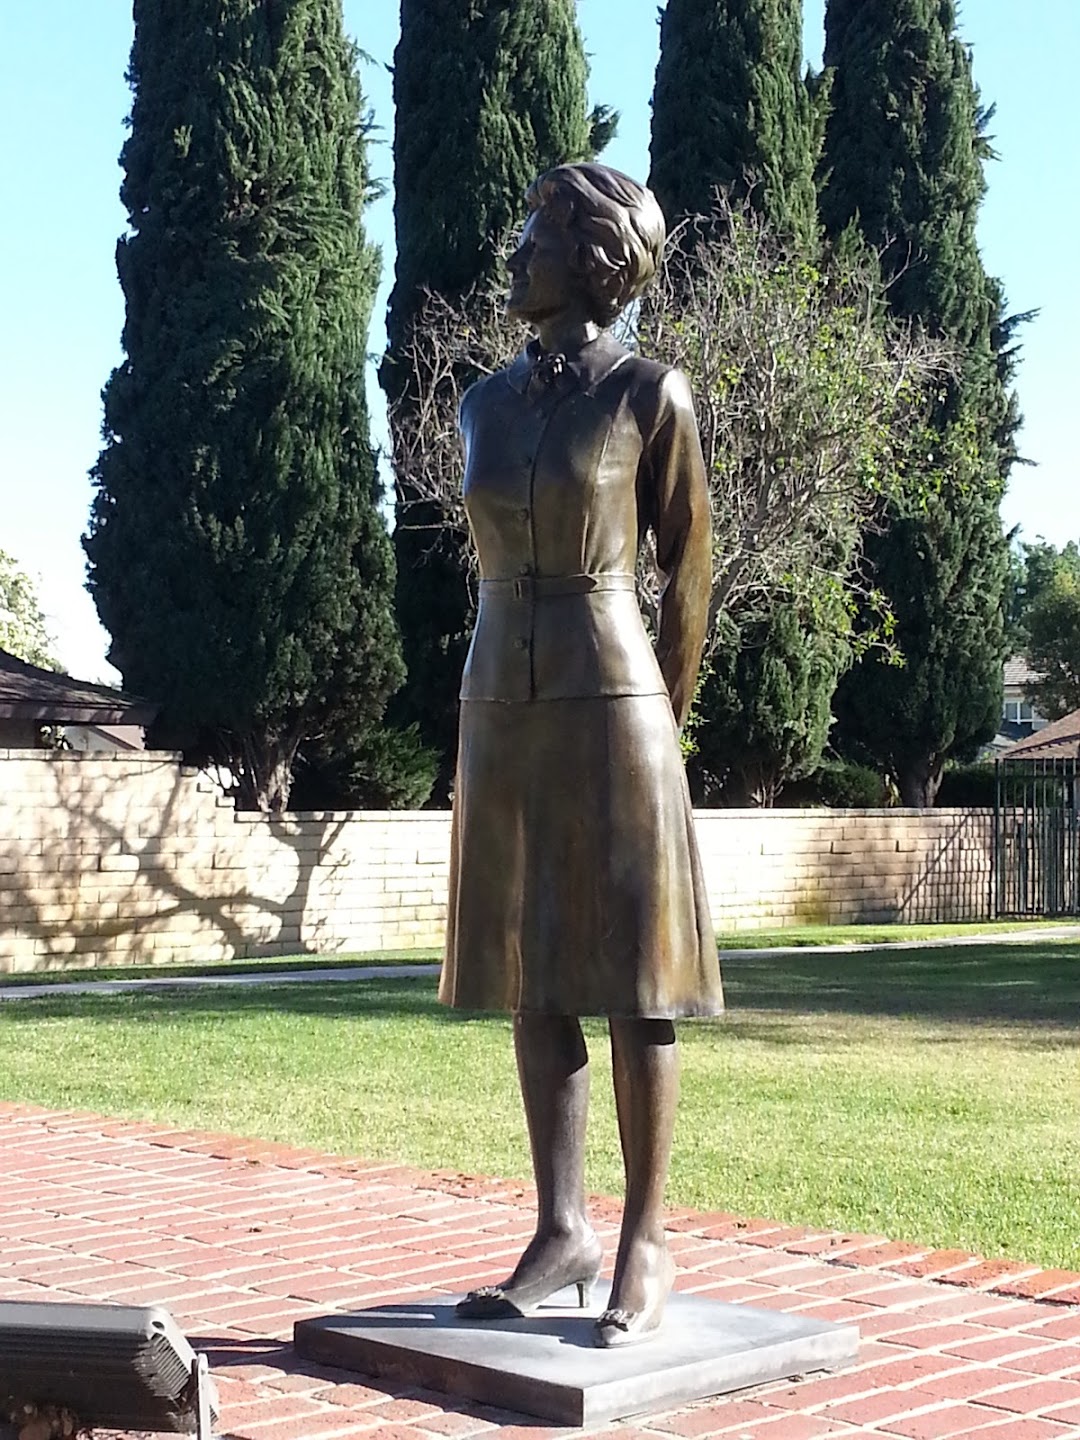 Statue Pat Nixon